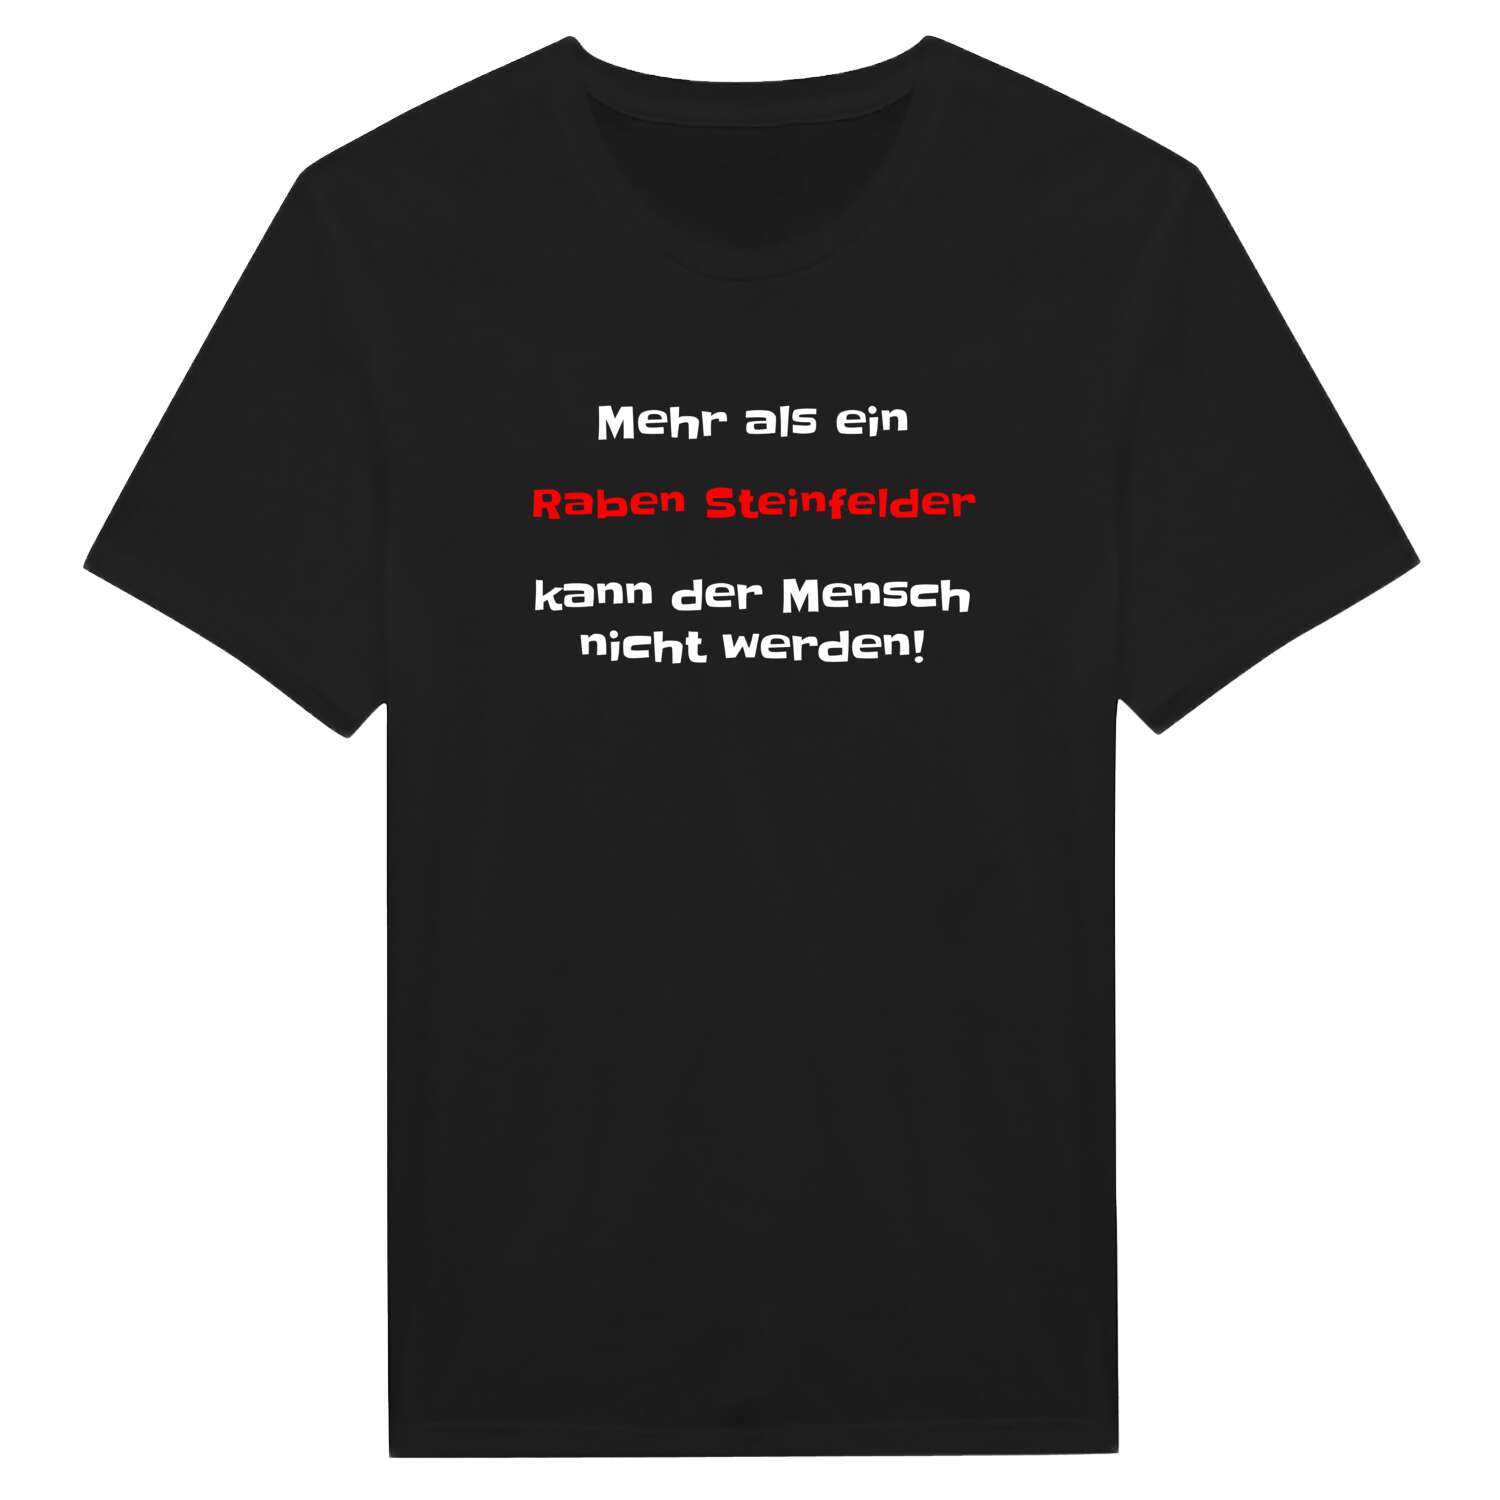 Raben Steinfeld T-Shirt »Mehr als ein«